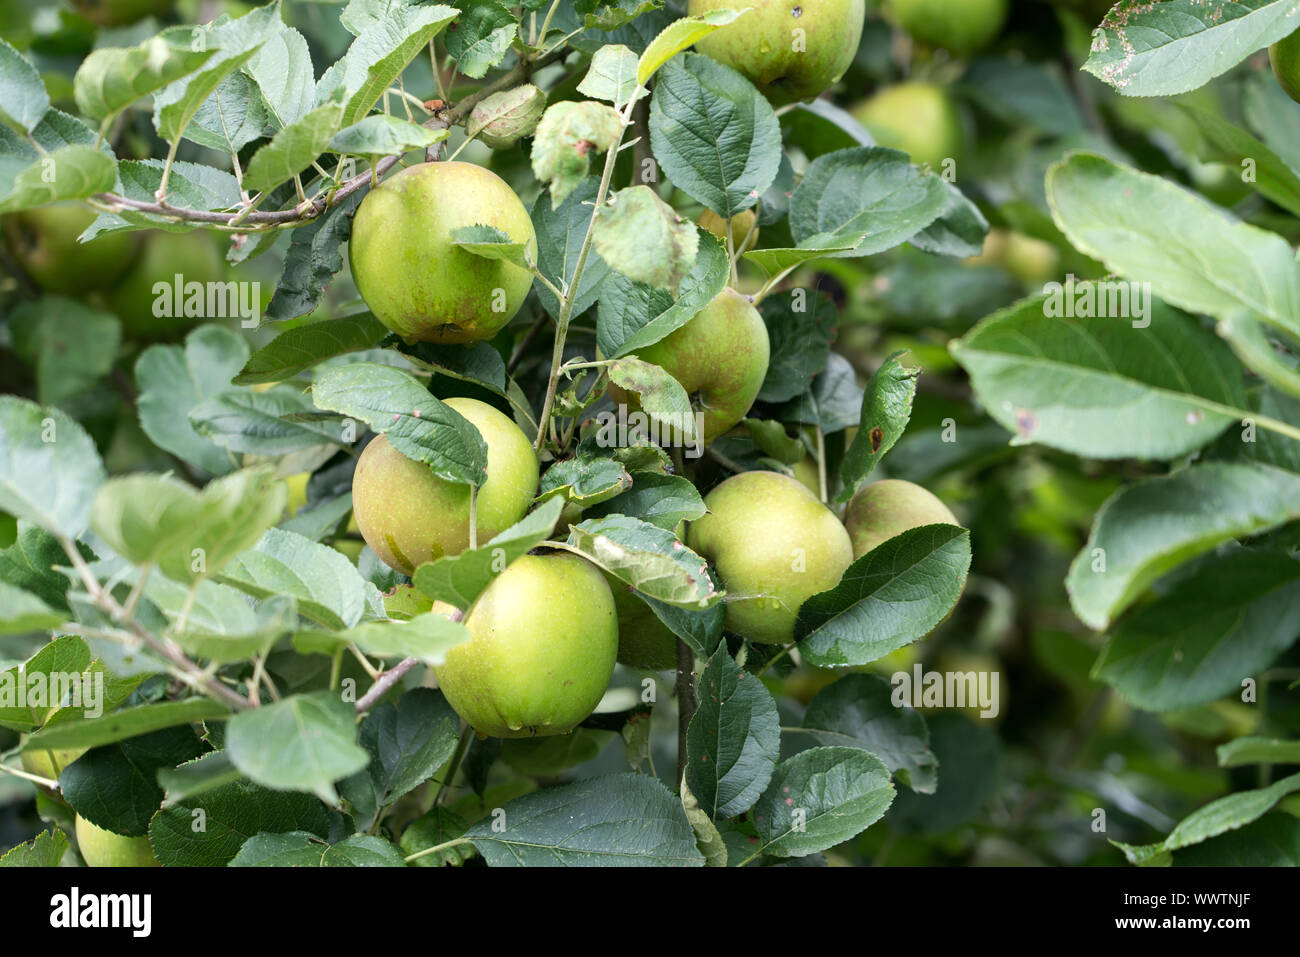 Belle de Boskoop apple, old variety, Germany, Europe; Stock Photo